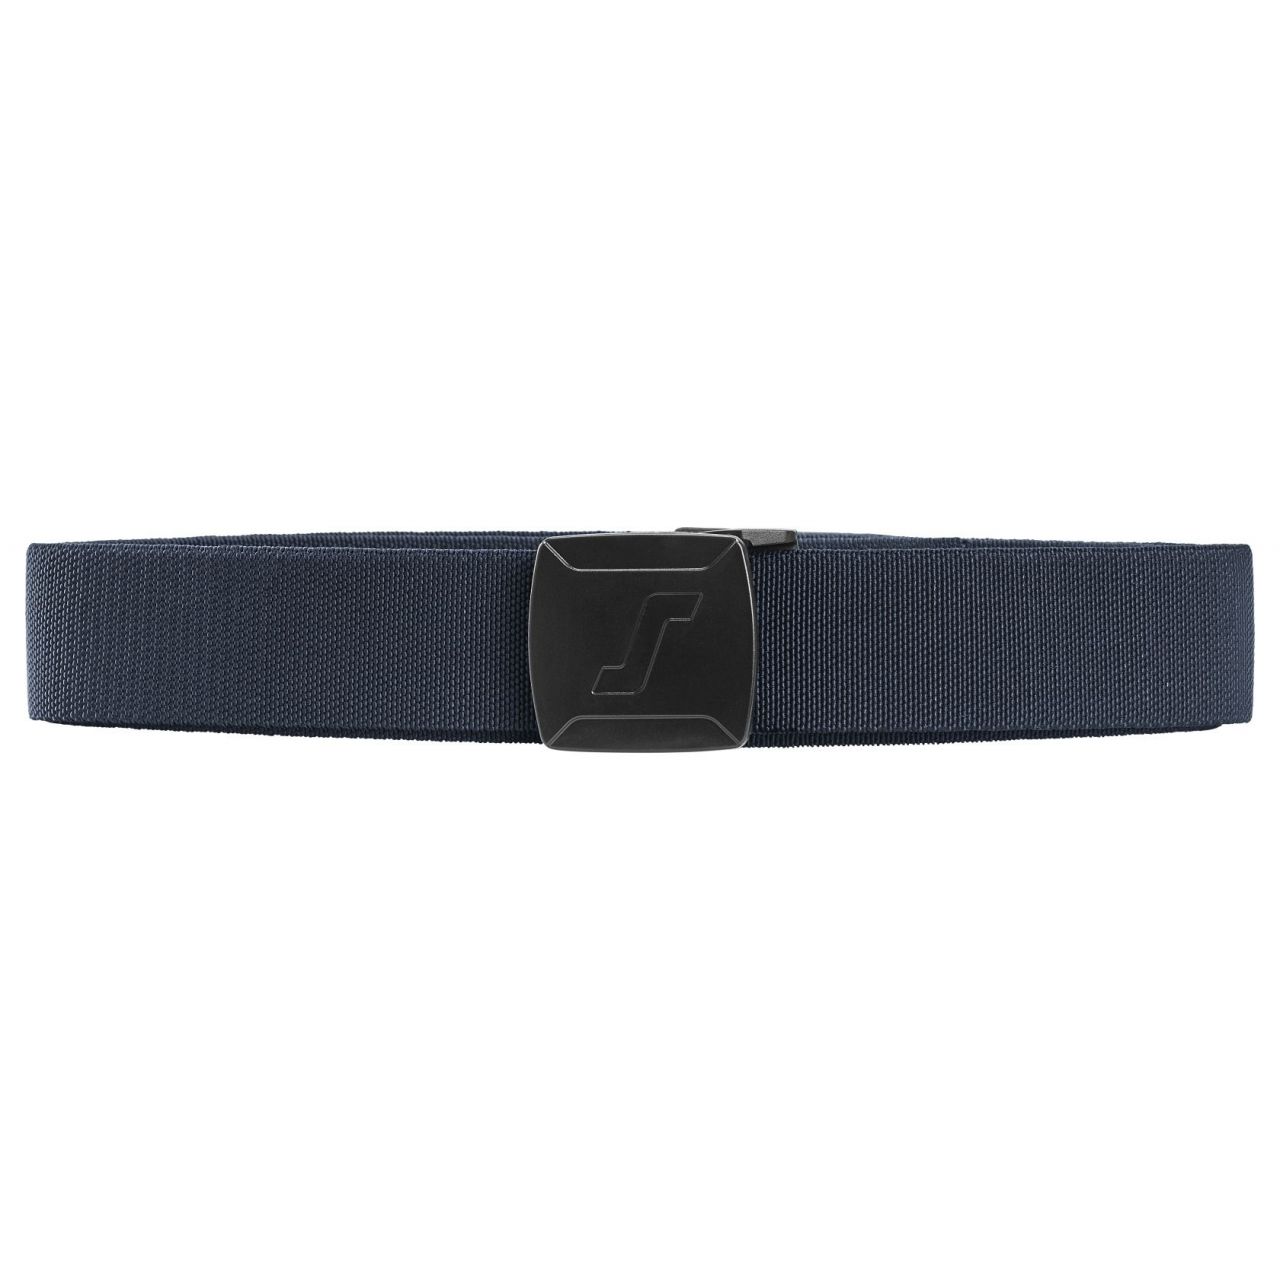 Cinturon elastico azul marino talla unica